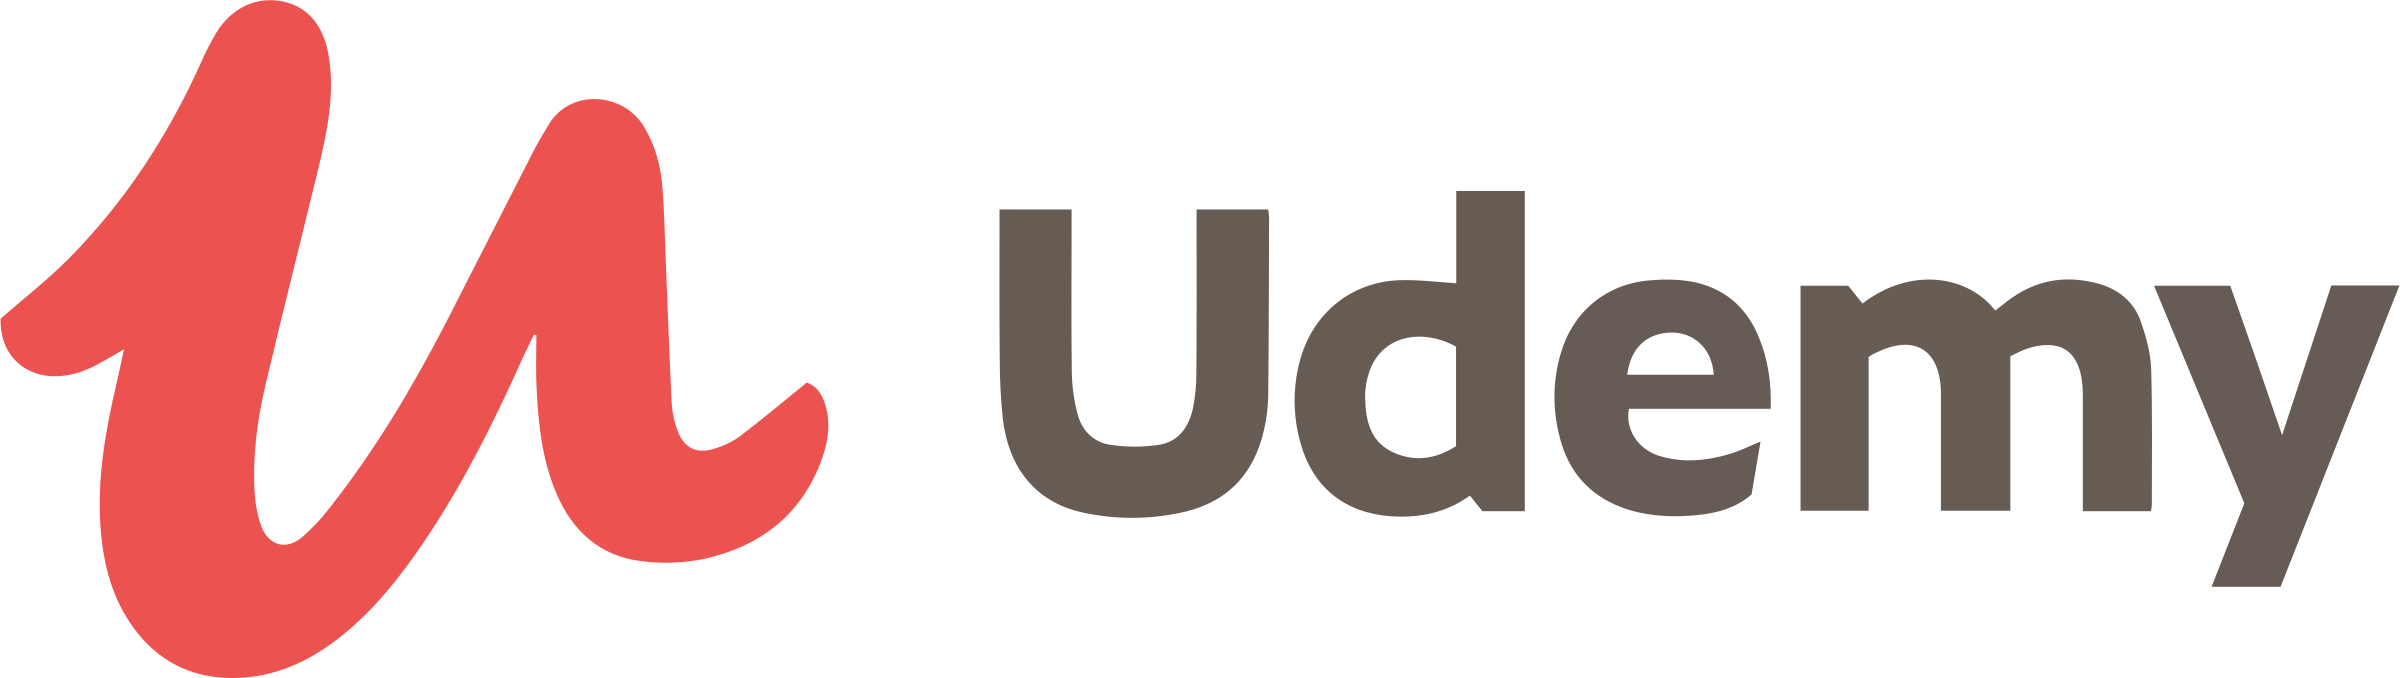 udemy-2-logo-png-transparent